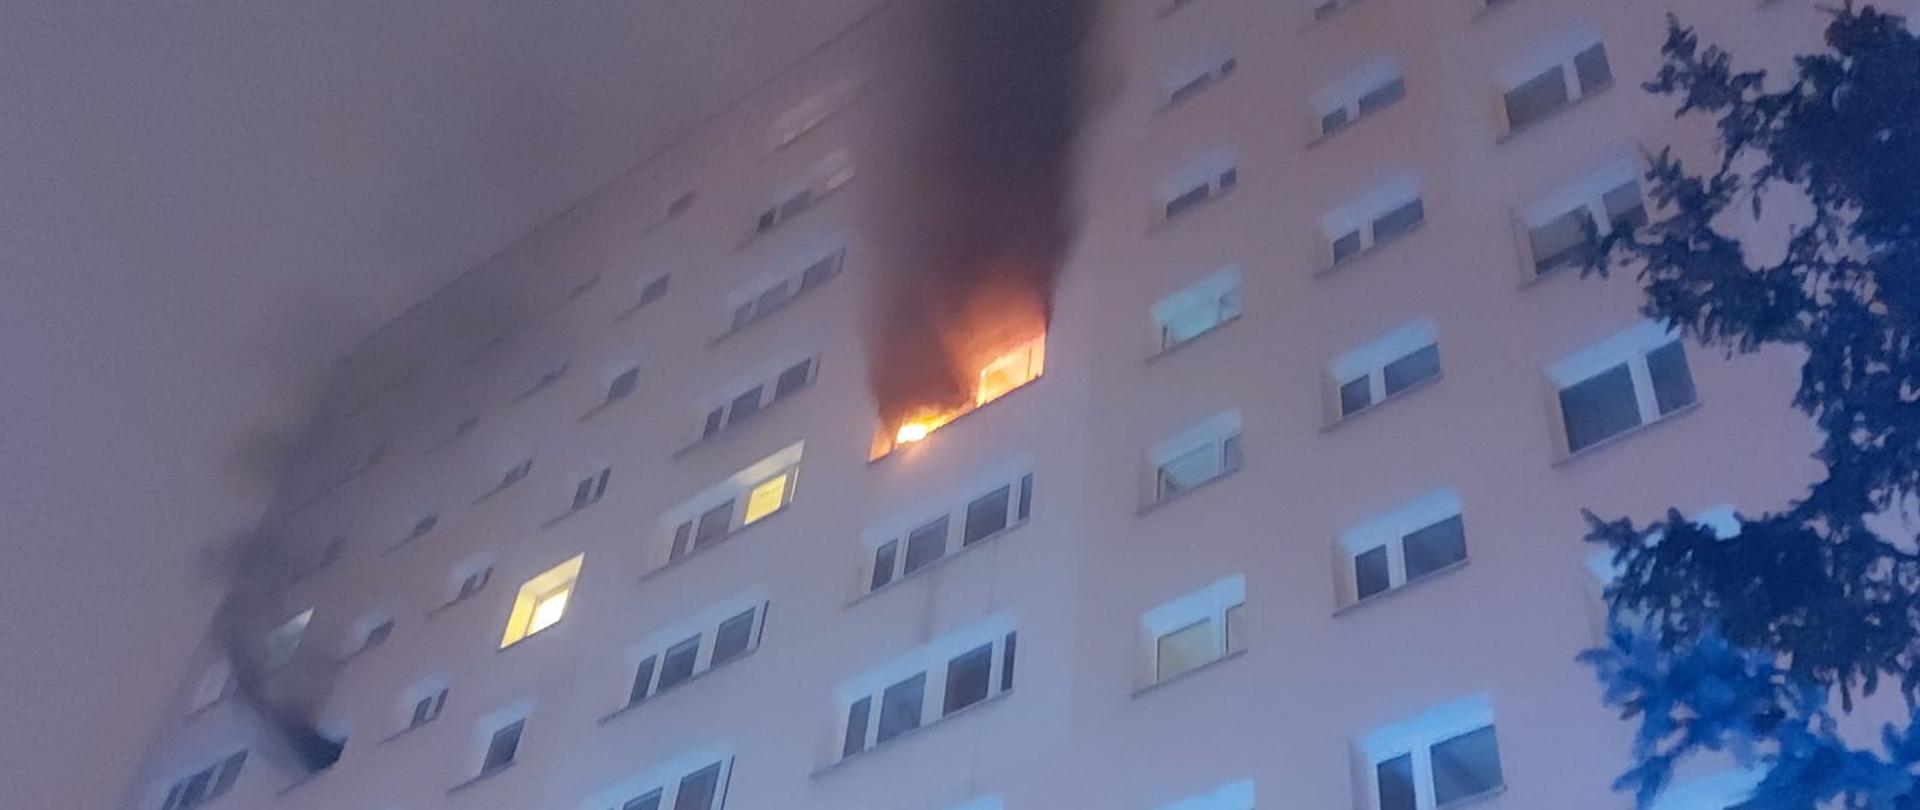 03.03.2021 Pożar mieszkania w Legionowie. Na zdjęciu blok mieszkalny wielorodzinny w jednym z mieszkań płomienie wychodzące na zewnątrz oraz silne zadymienie. 